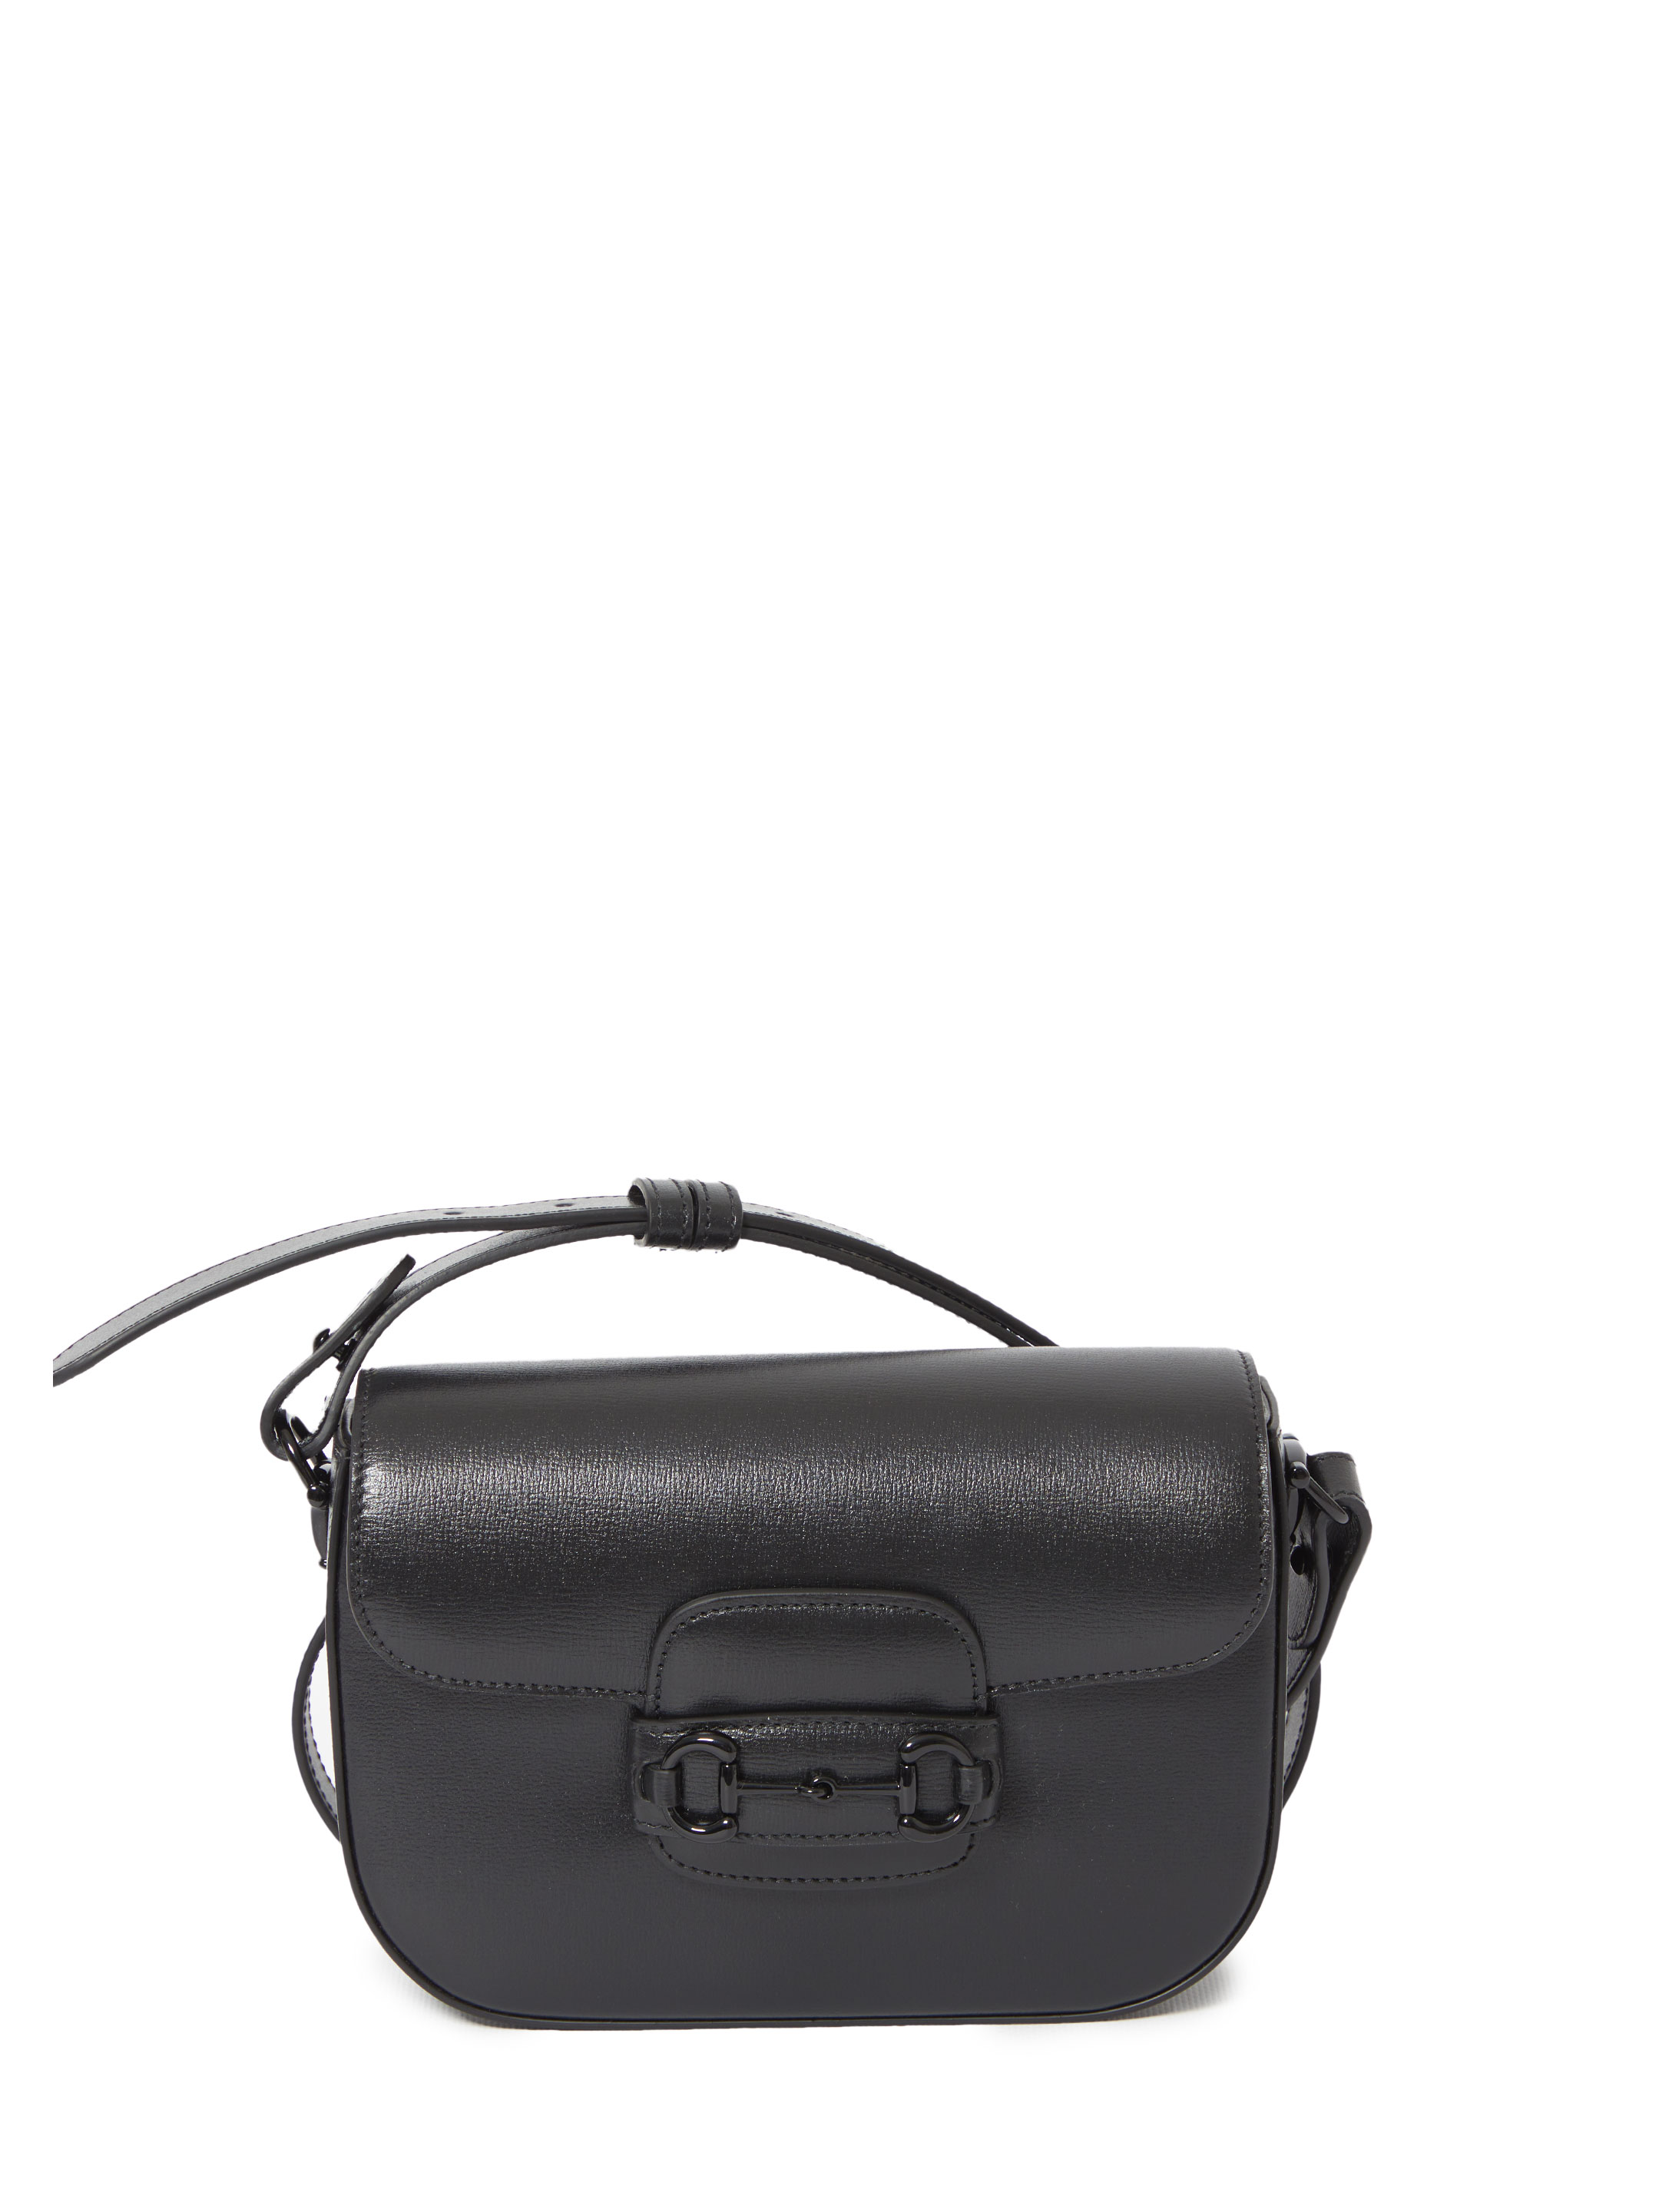 Сумка Gucci Small Gucci Horsebit 1955, черный сумка gucci horsebit 1955 mini bag коричневый